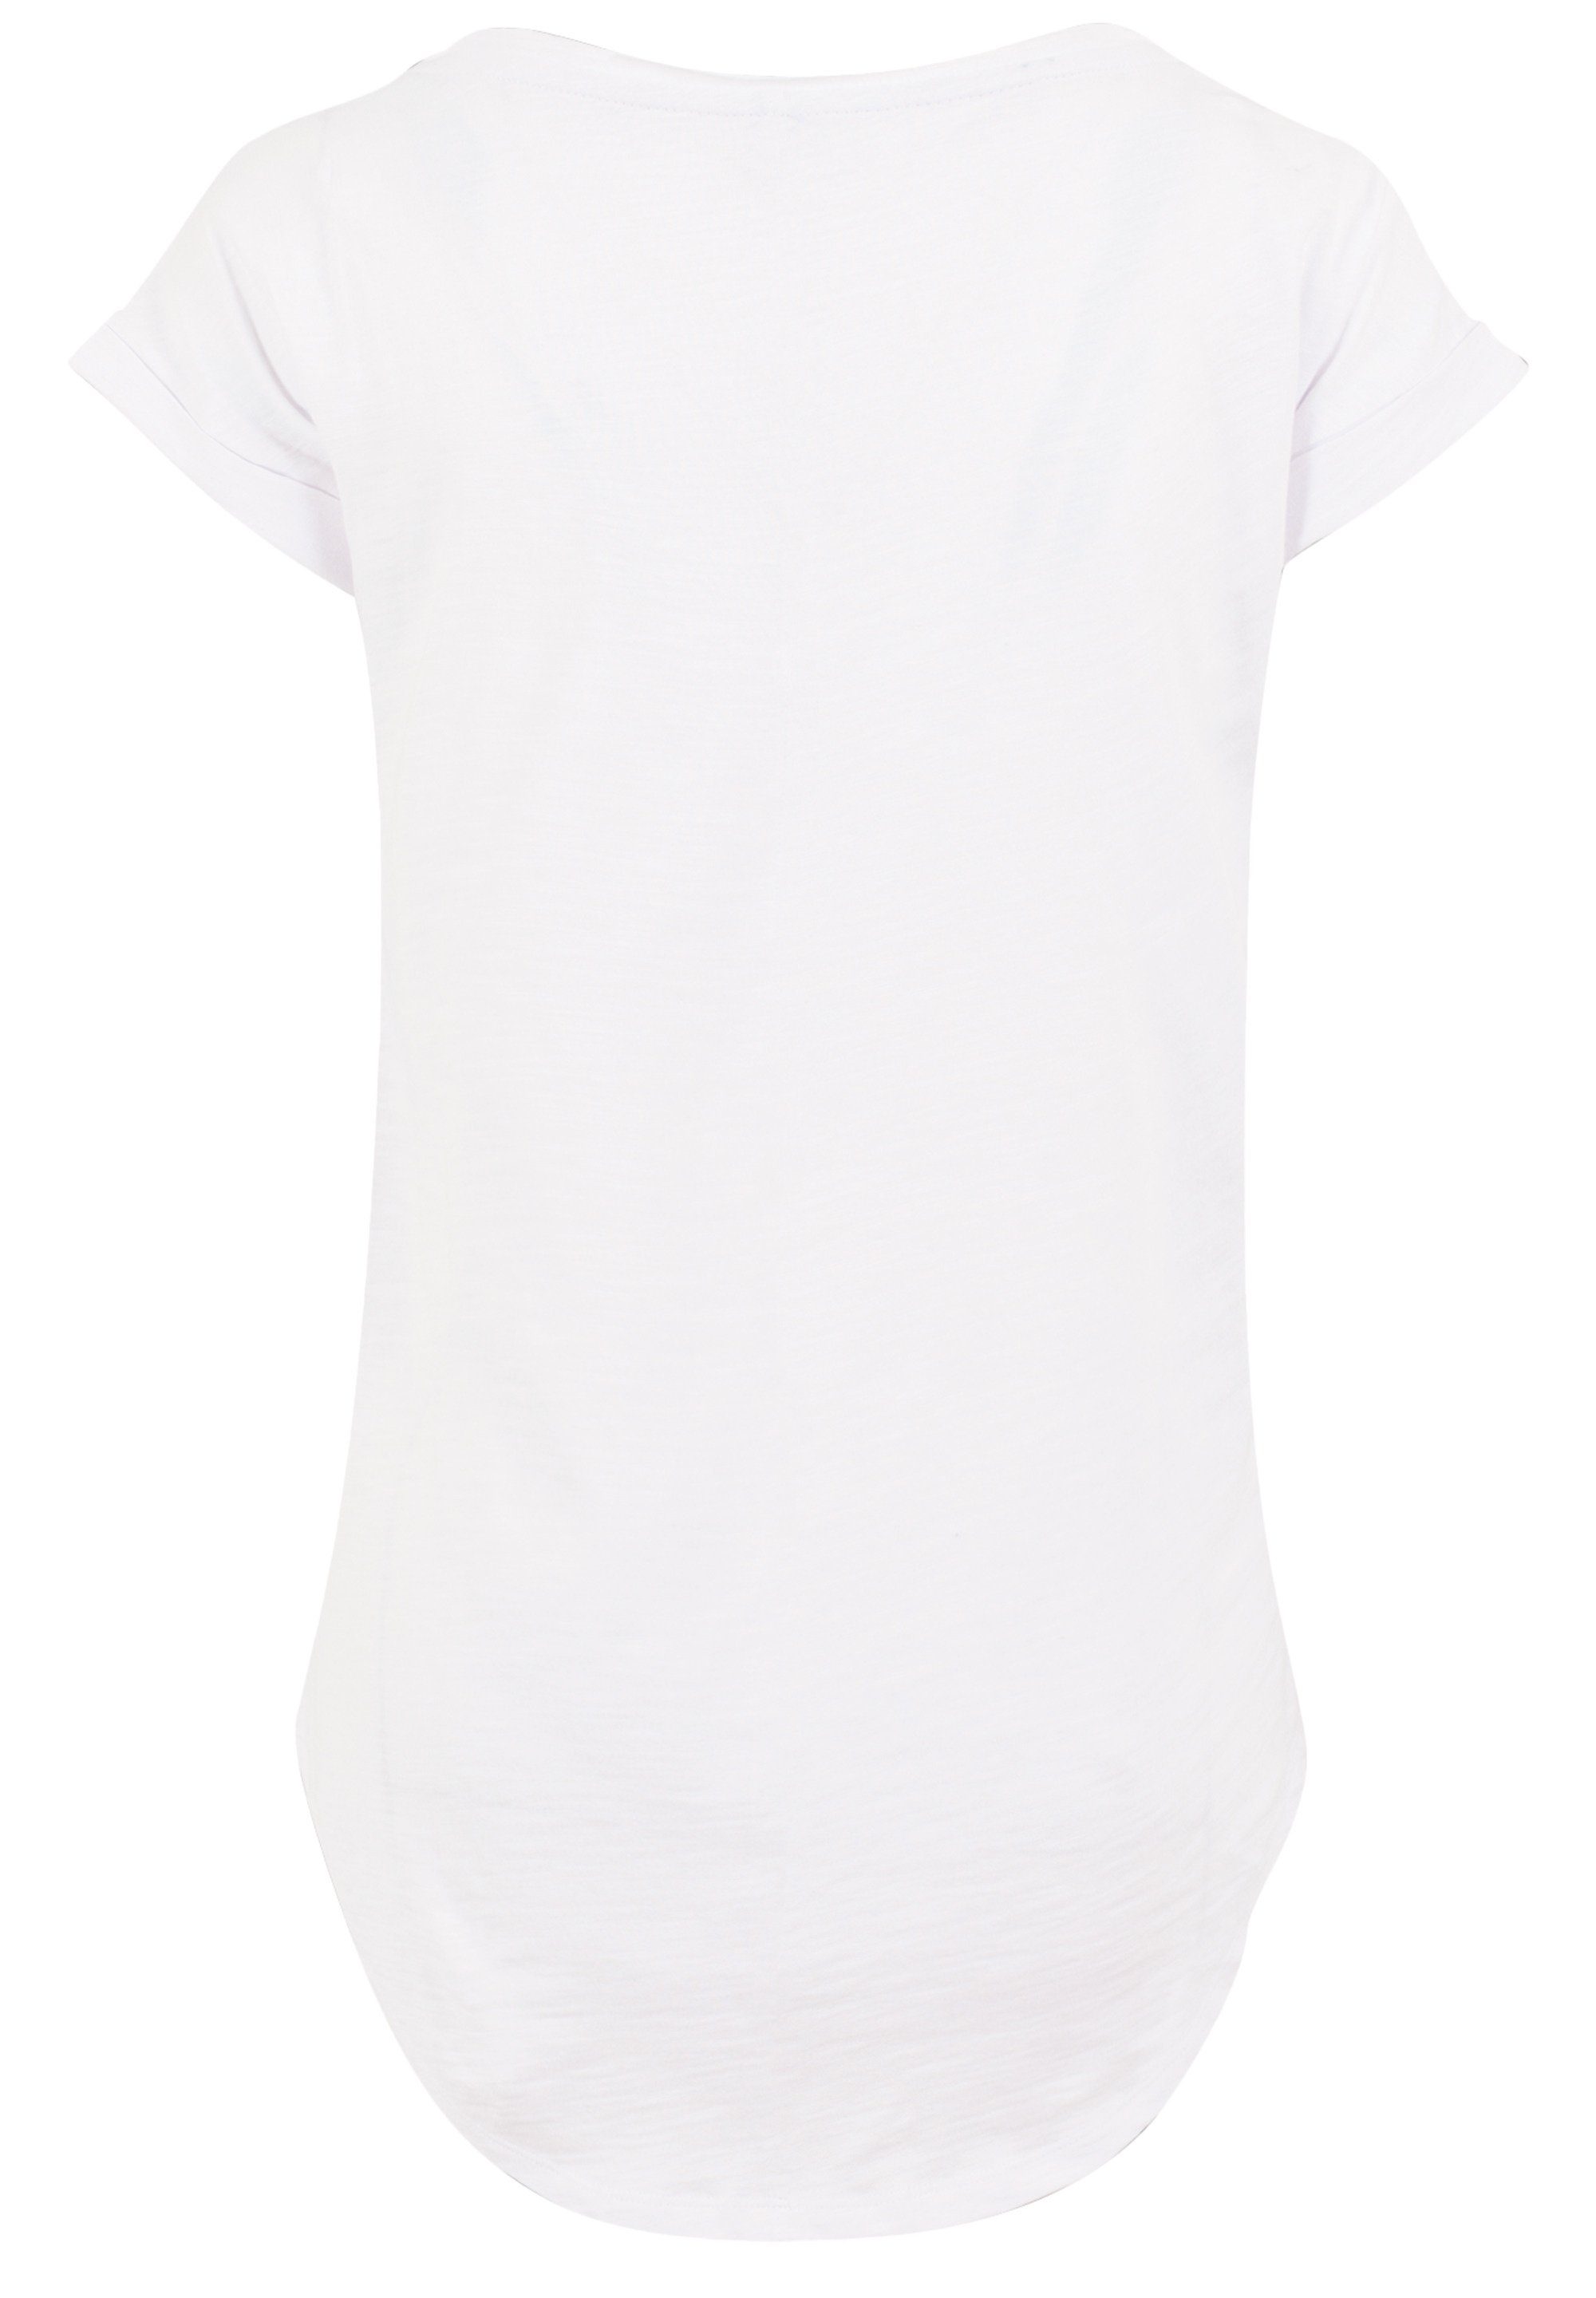 F4NT4STIC T-Shirt Rubber Duck Captain Long Print, Sehr weicher  Baumwollstoff mit hohem Tragekomfort